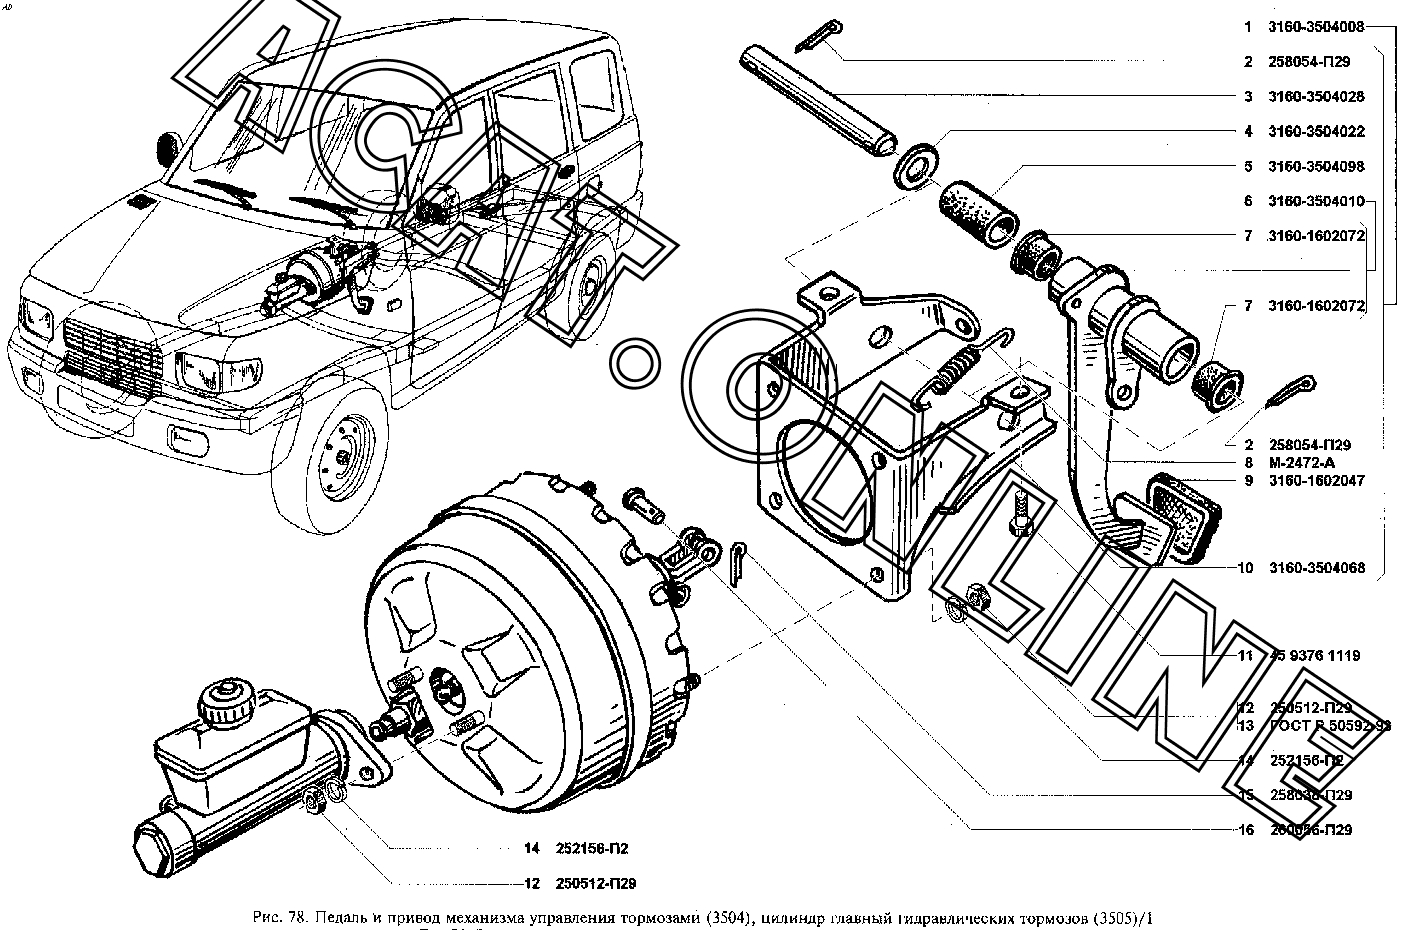 Тормозная система УАЗ 3160